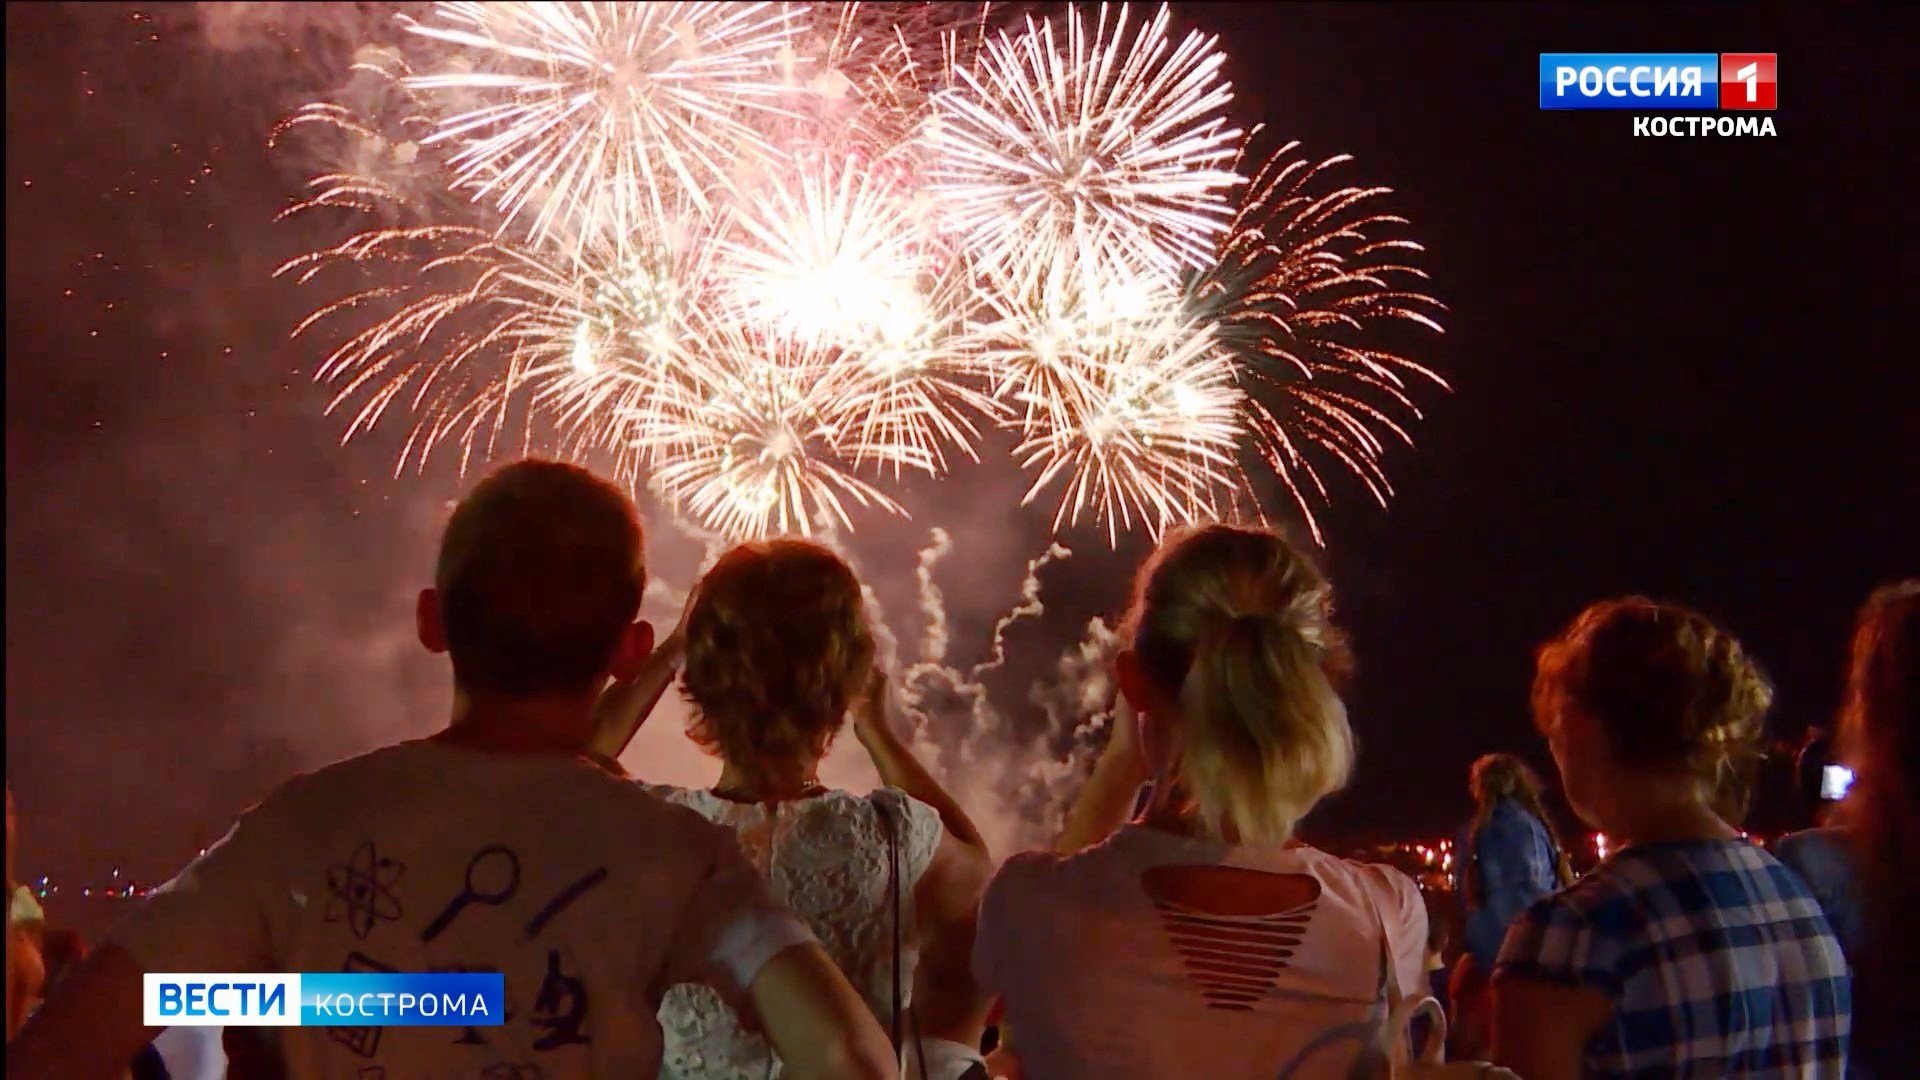 Фестиваля фейерверков в этом году в Костроме не будет